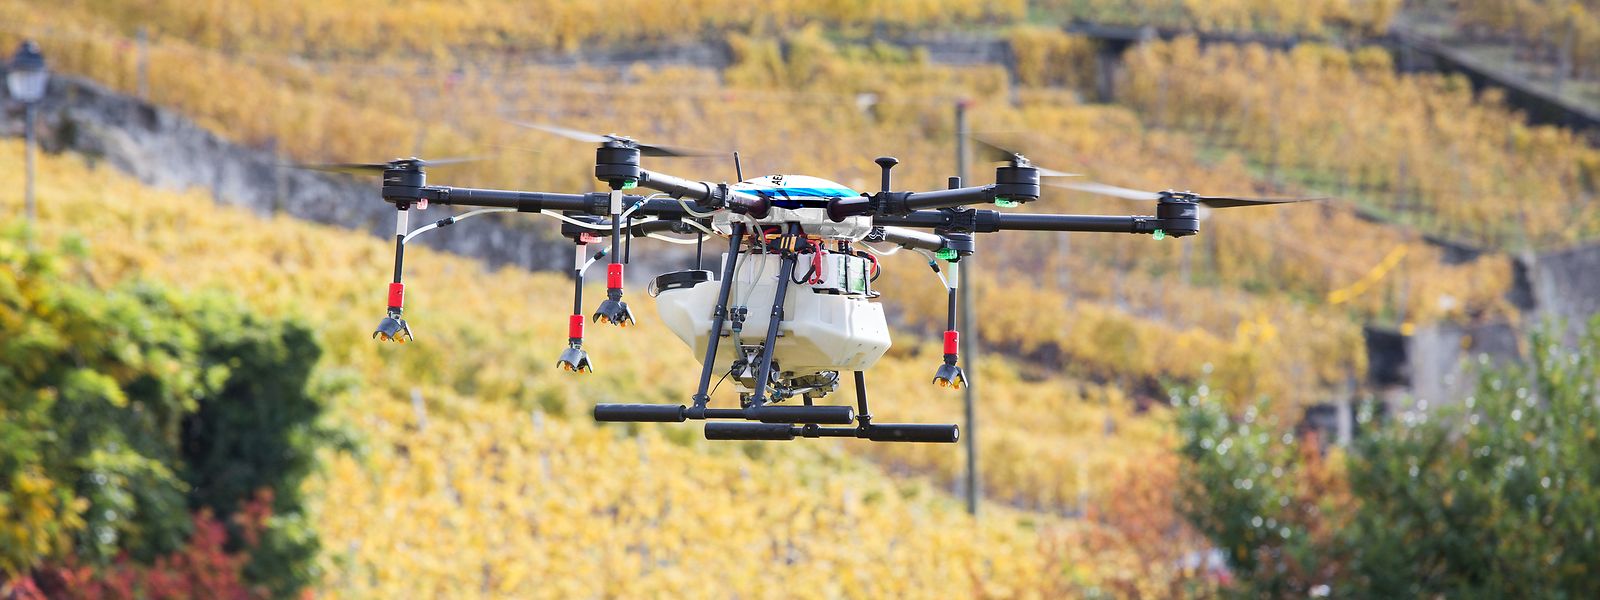 Intelligente Drohnen statt Hubschrauber – so soll die Weinbergüberwachung der Zukunft aussehen. Die Drohnen können auch Pflanzenschutzmittel versprühen.⋌ 